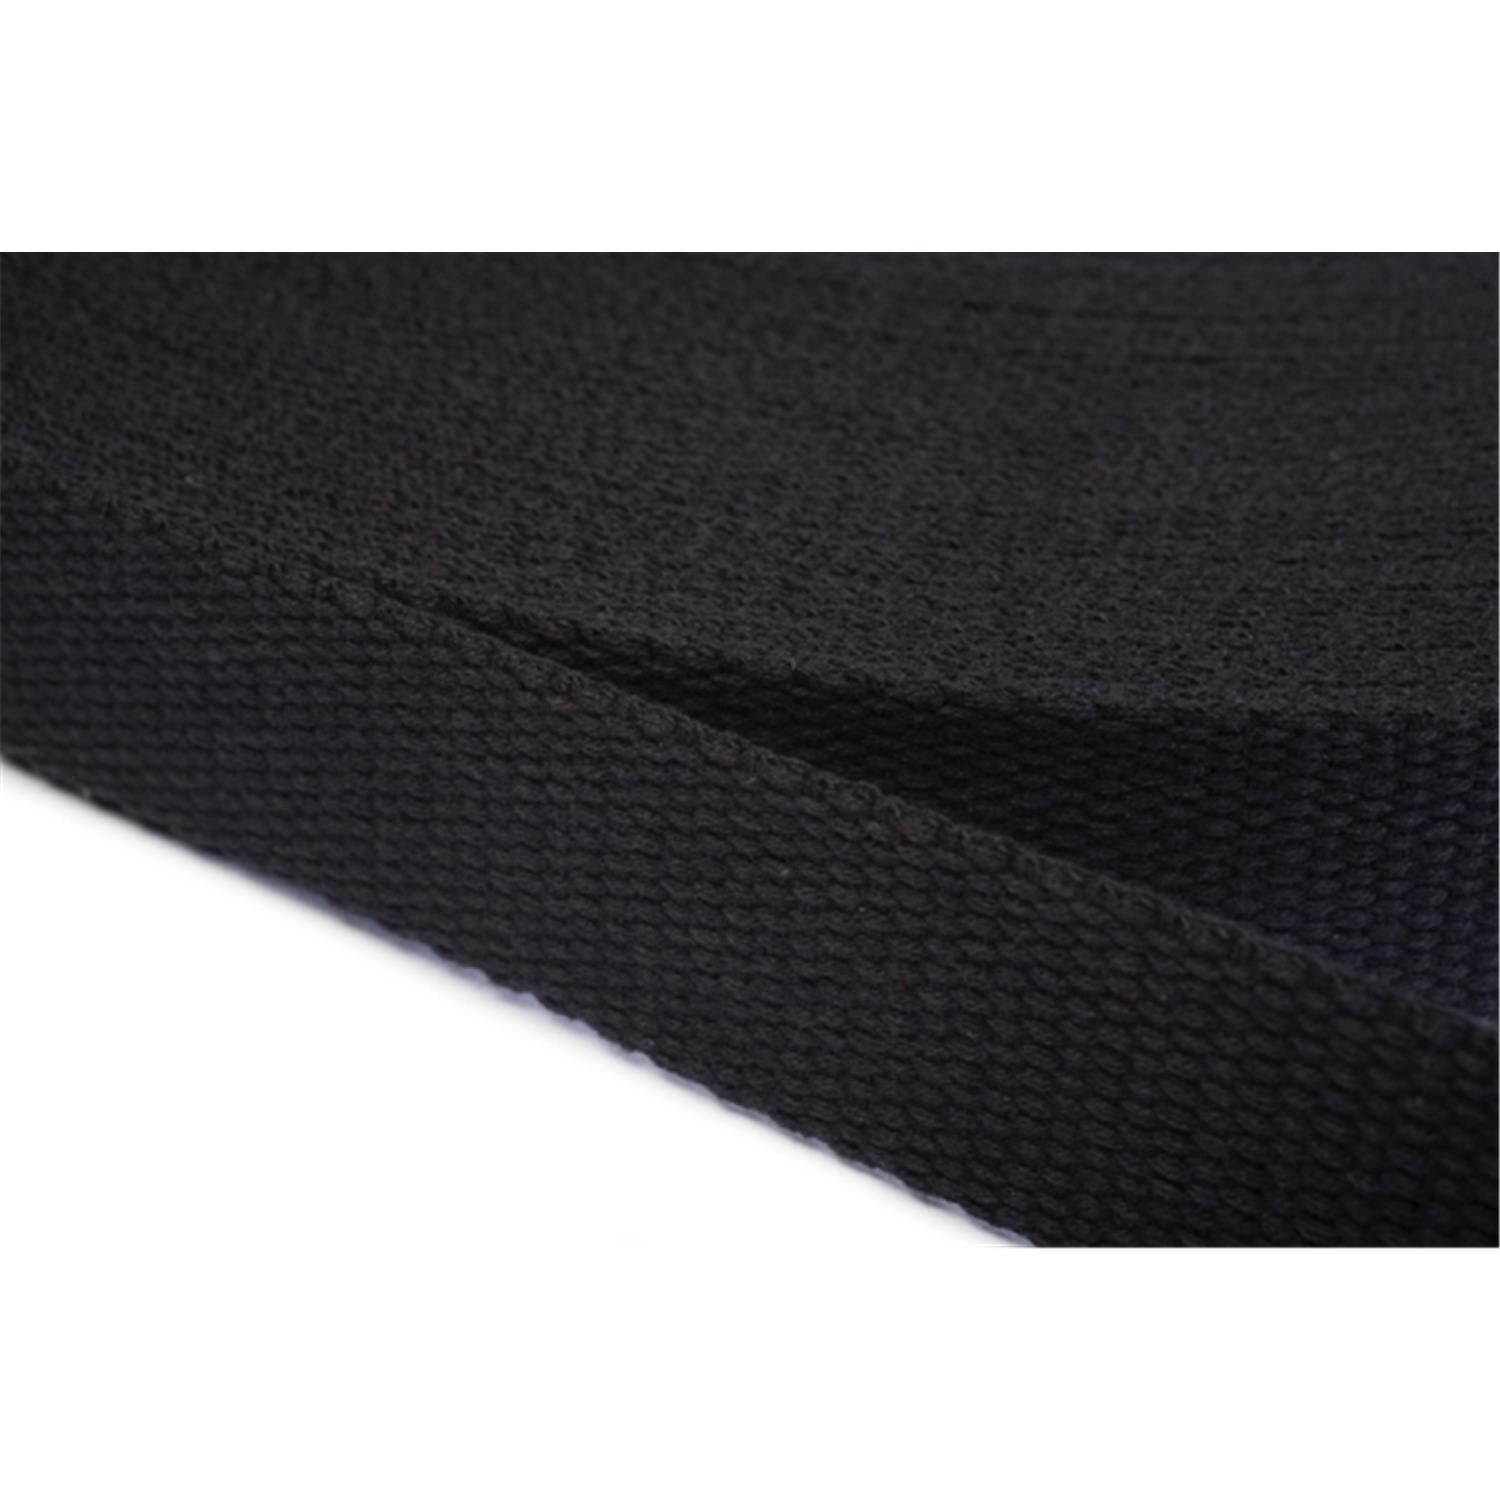 Gurtband aus Baumwolle 10mm in 20 Farben 20 - schwarz 6 Meter